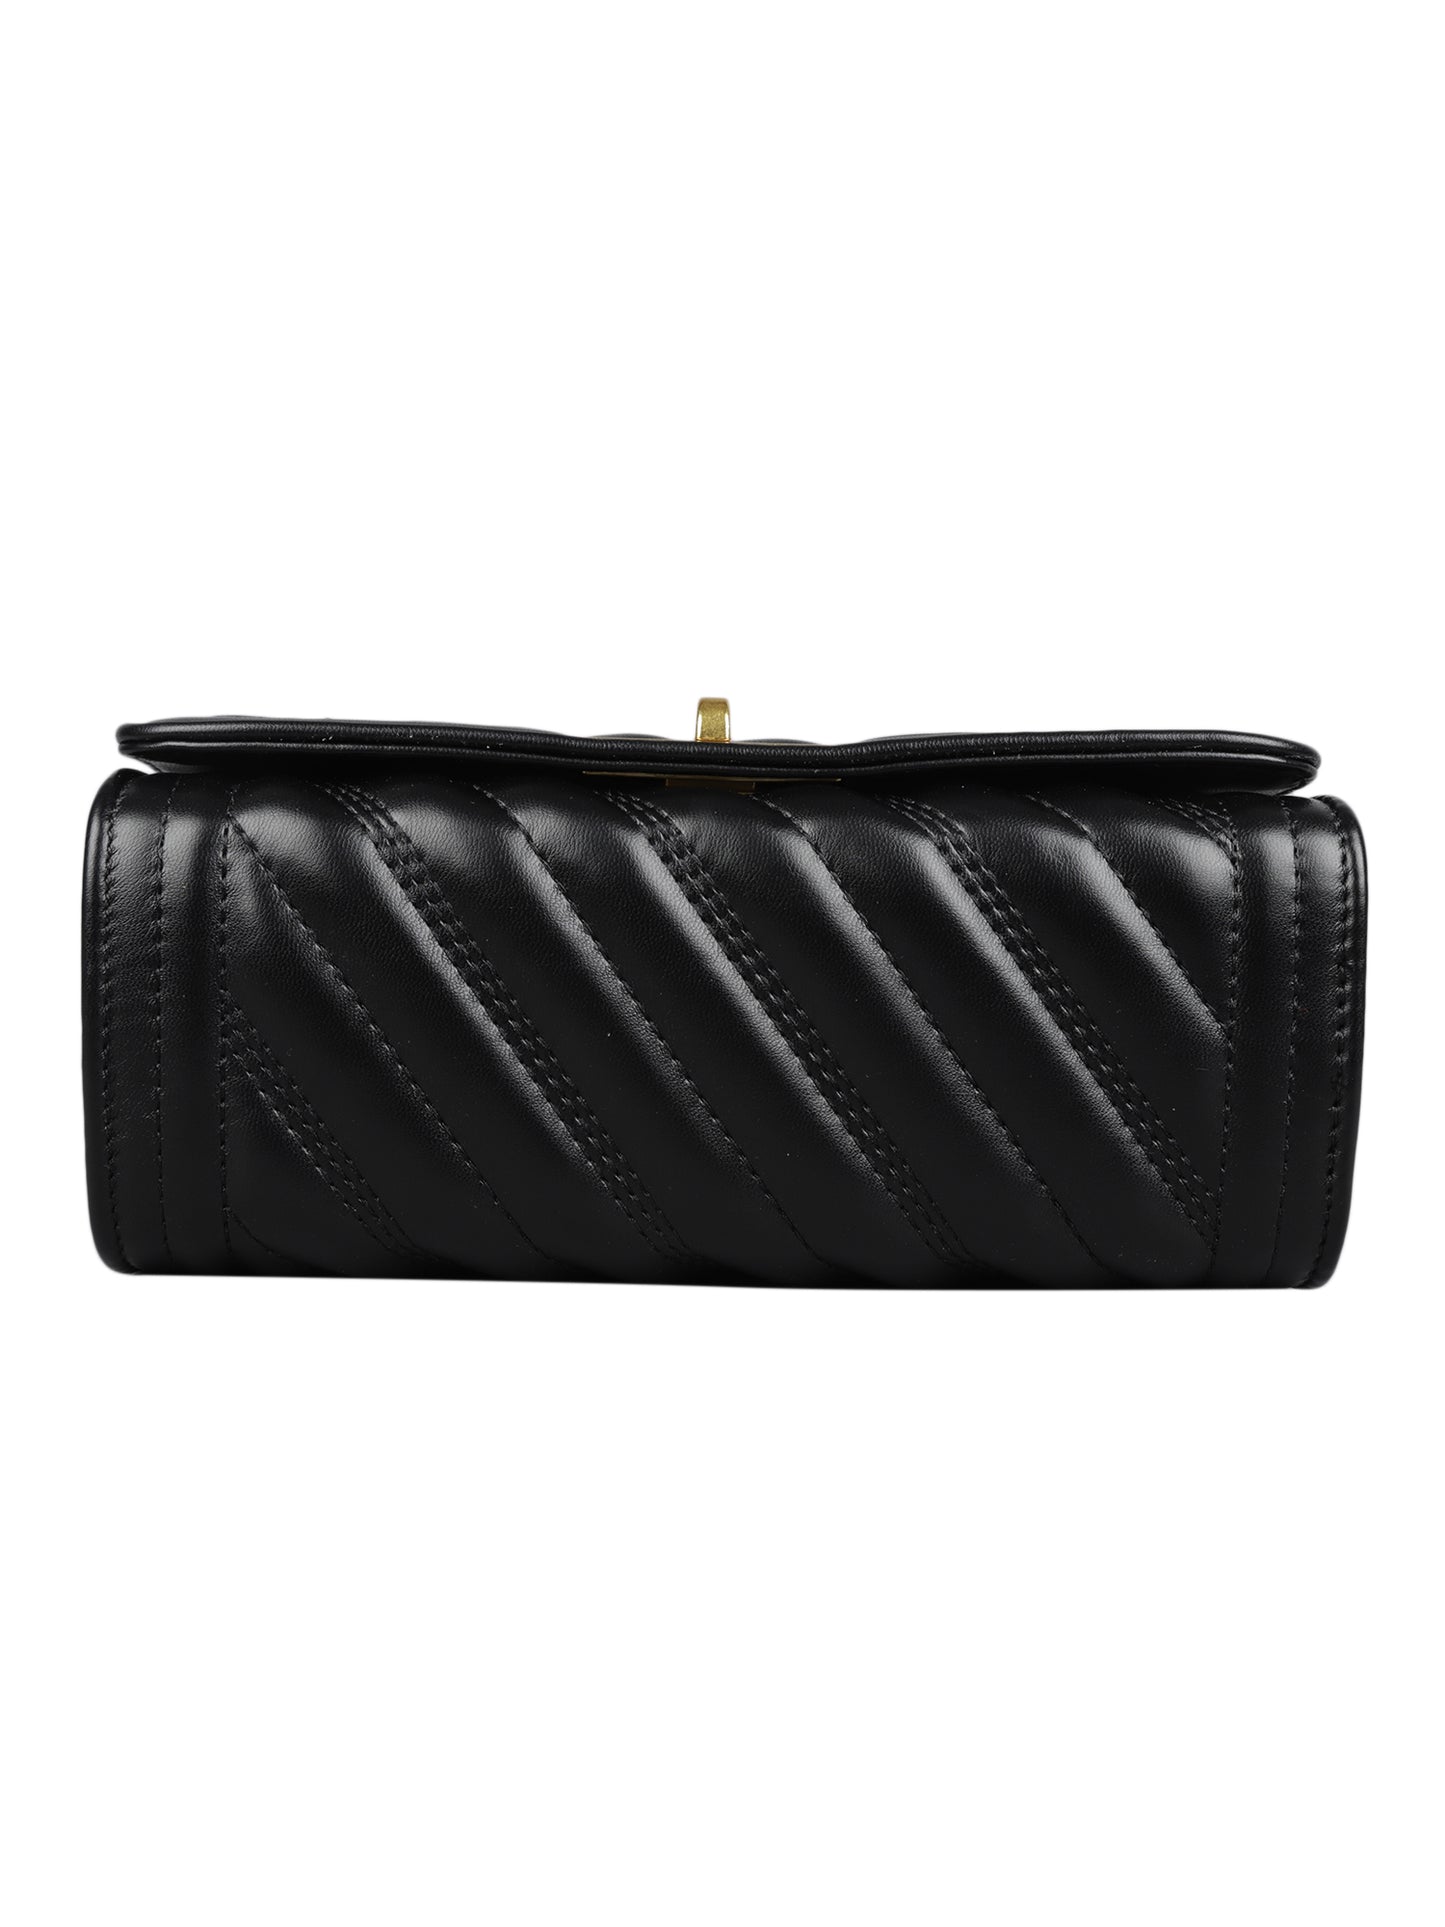 MINI WESST Women's Black Handbags(MWHB021BL)